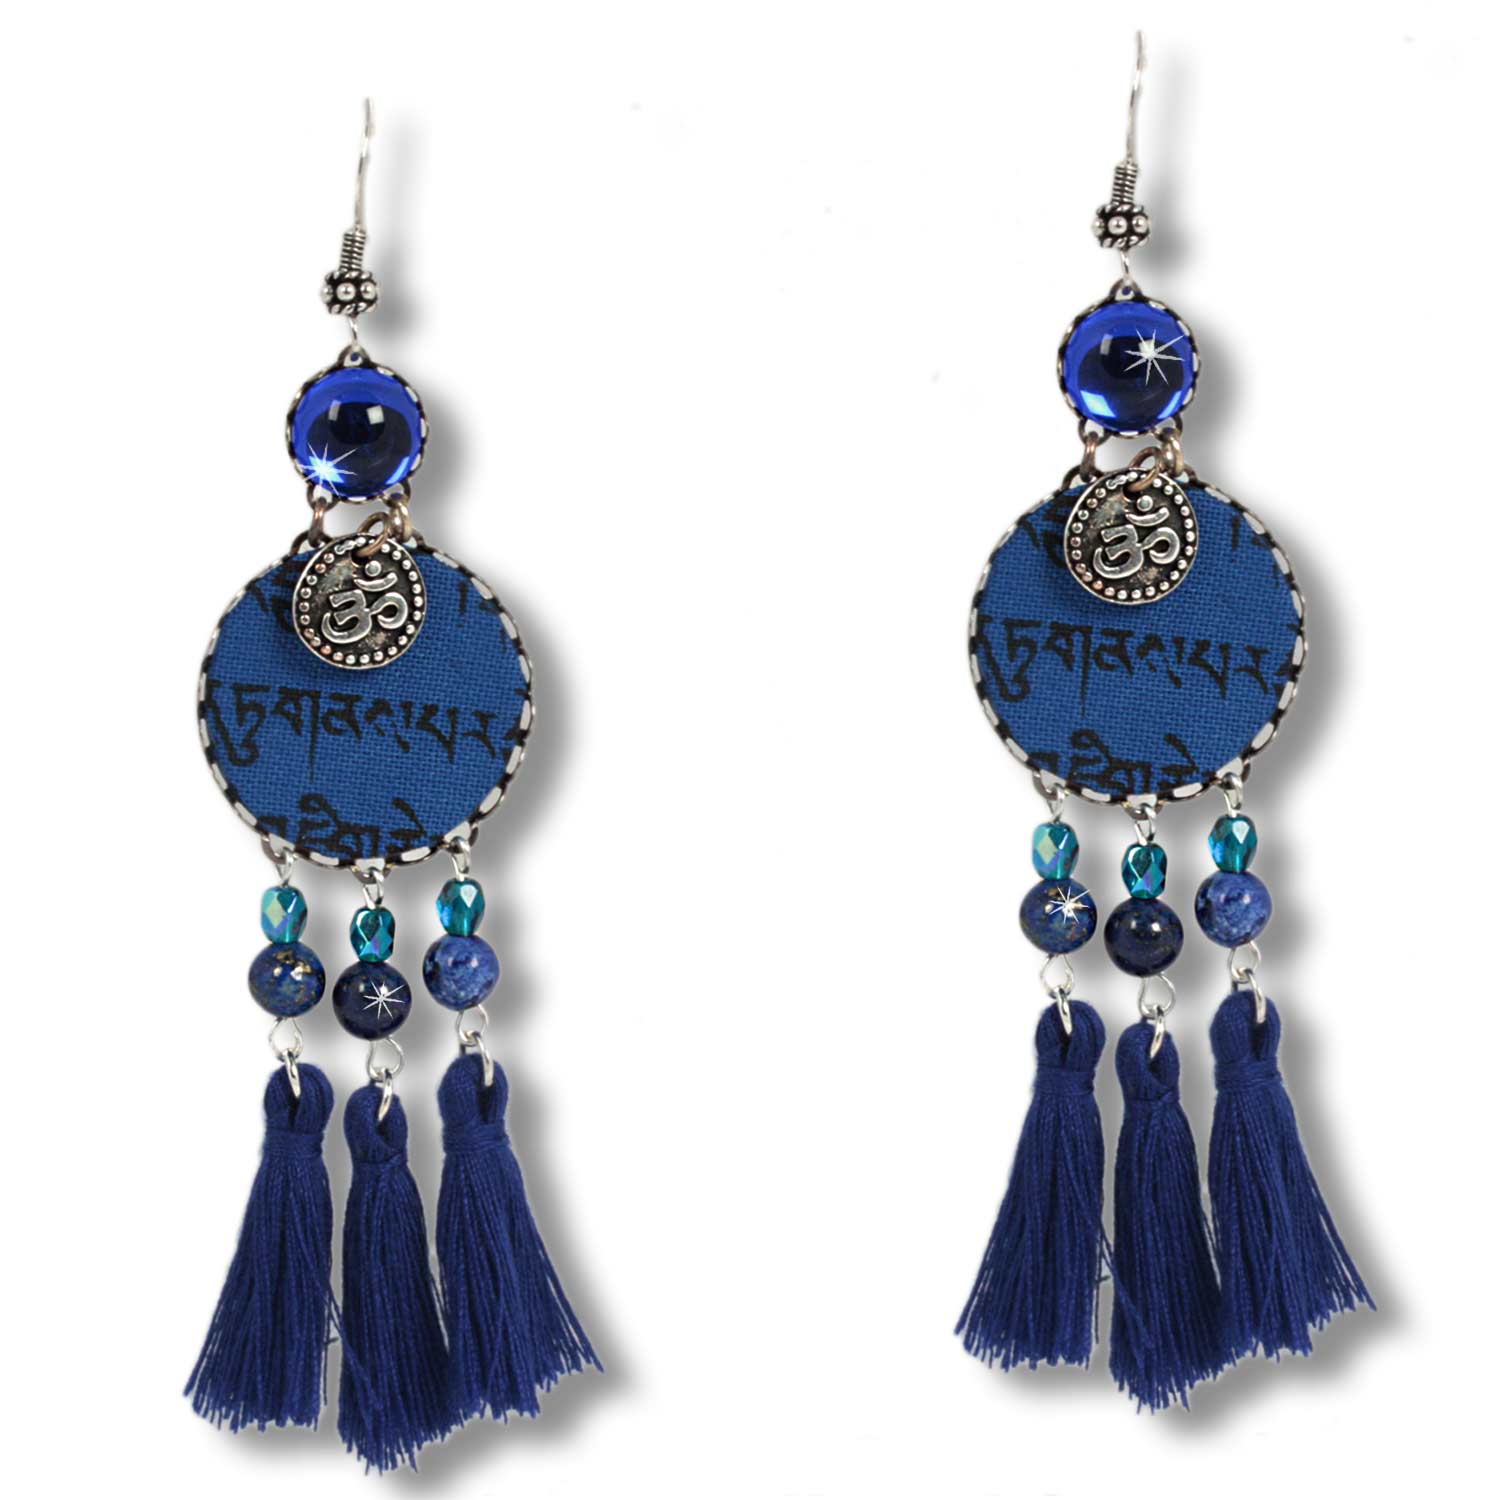 Space Tashi - Tibetan Wish earrings with lapis lazuli